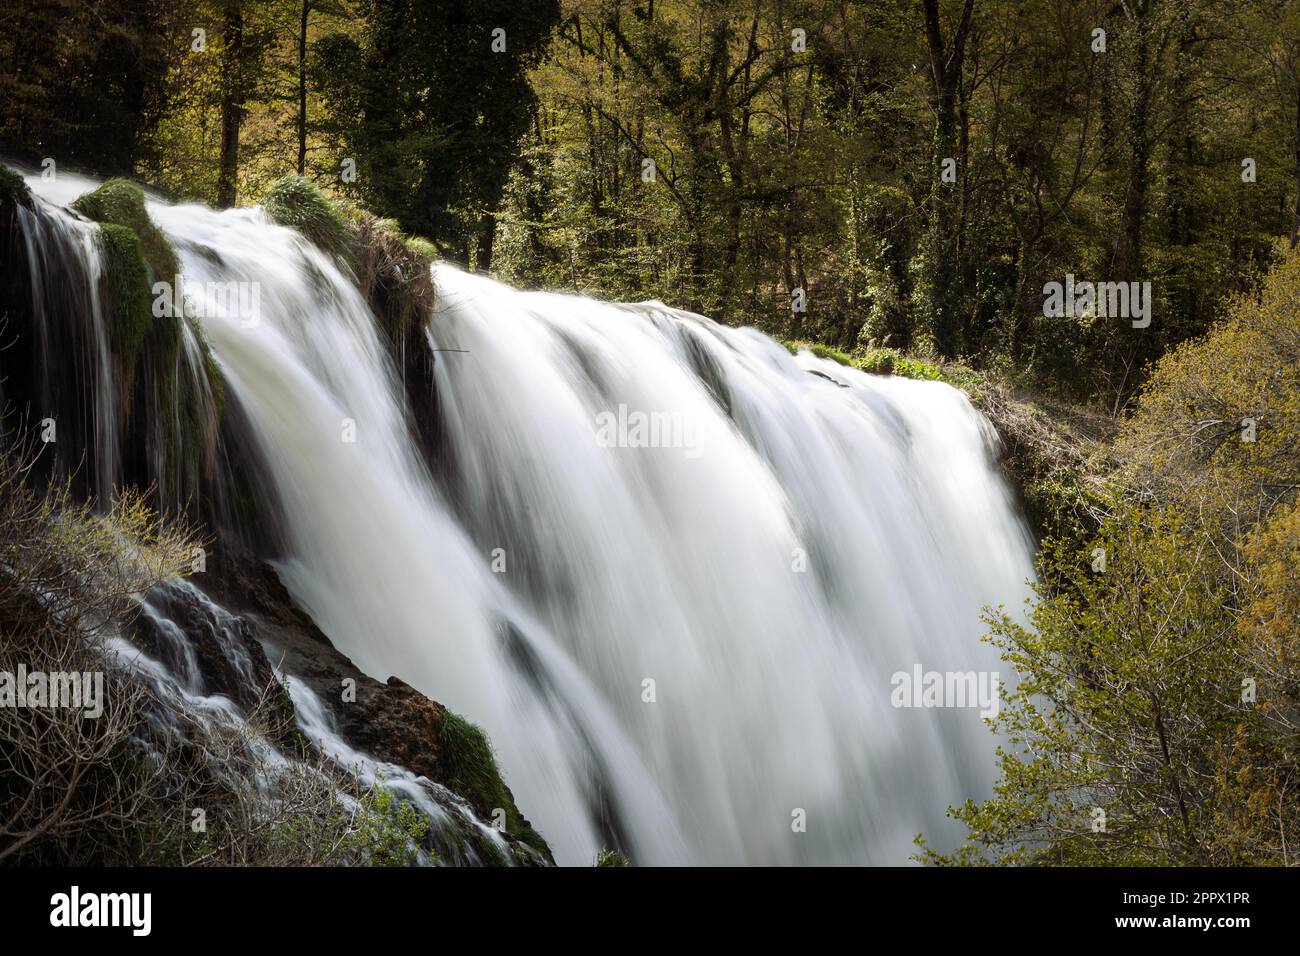 Cascata delle Marmore in Umbrien, Italien Stockfoto